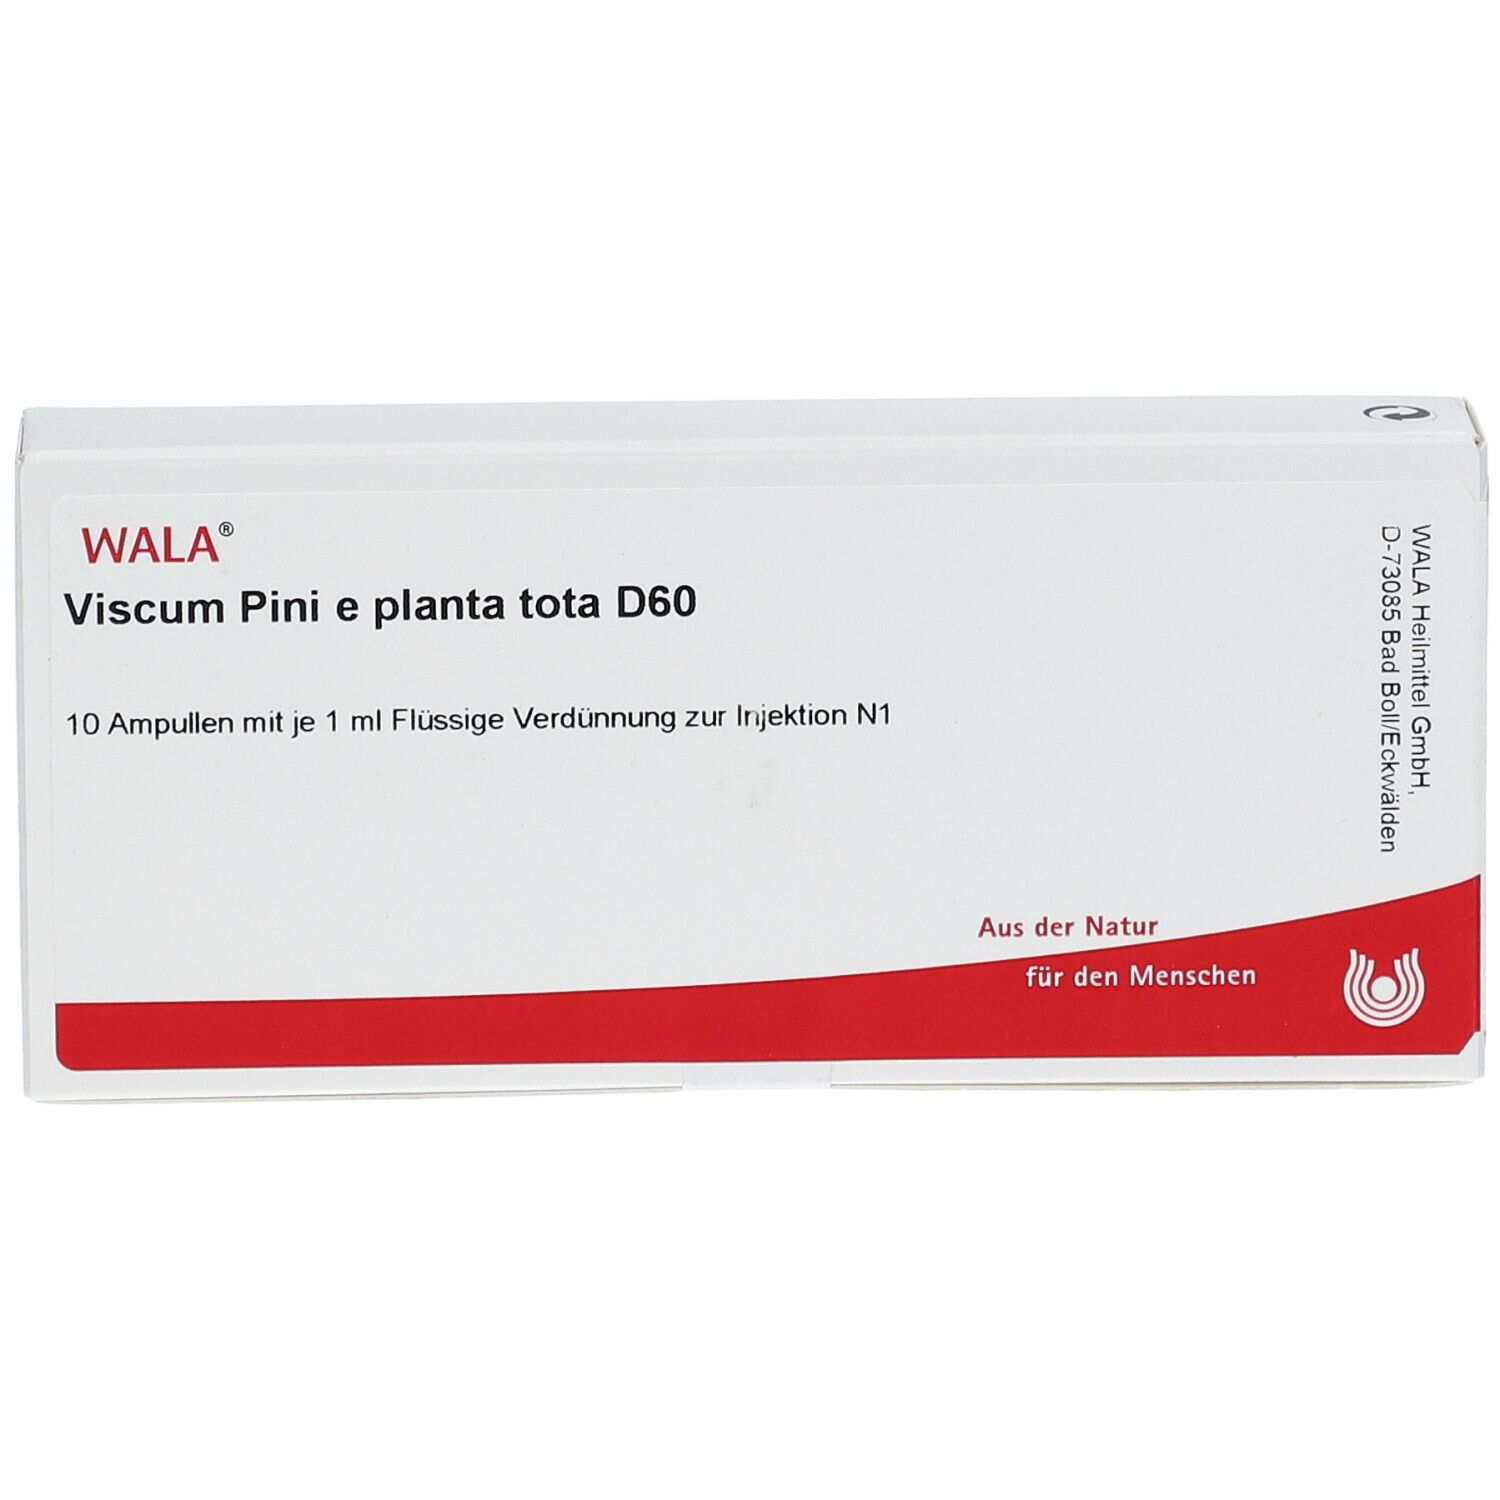 WALA® Viscum Pini e planta tota D 60